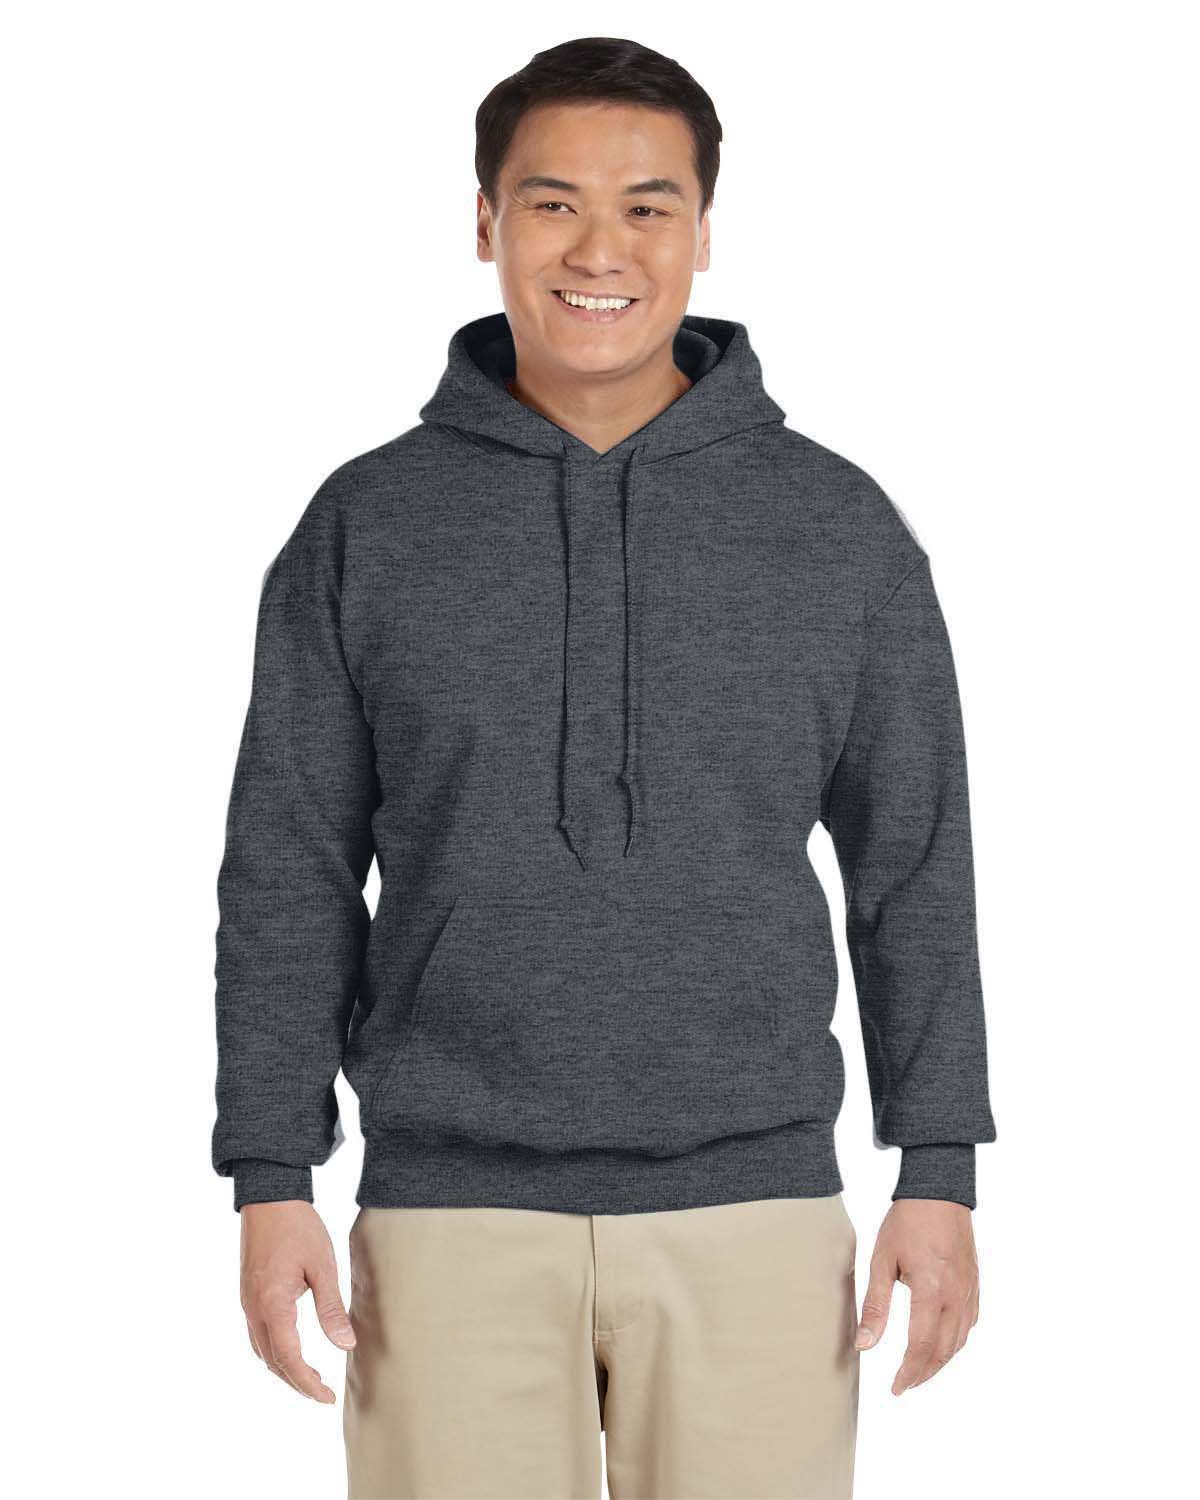 A095 18500 Gildan Adult Hooded Sweatshirt